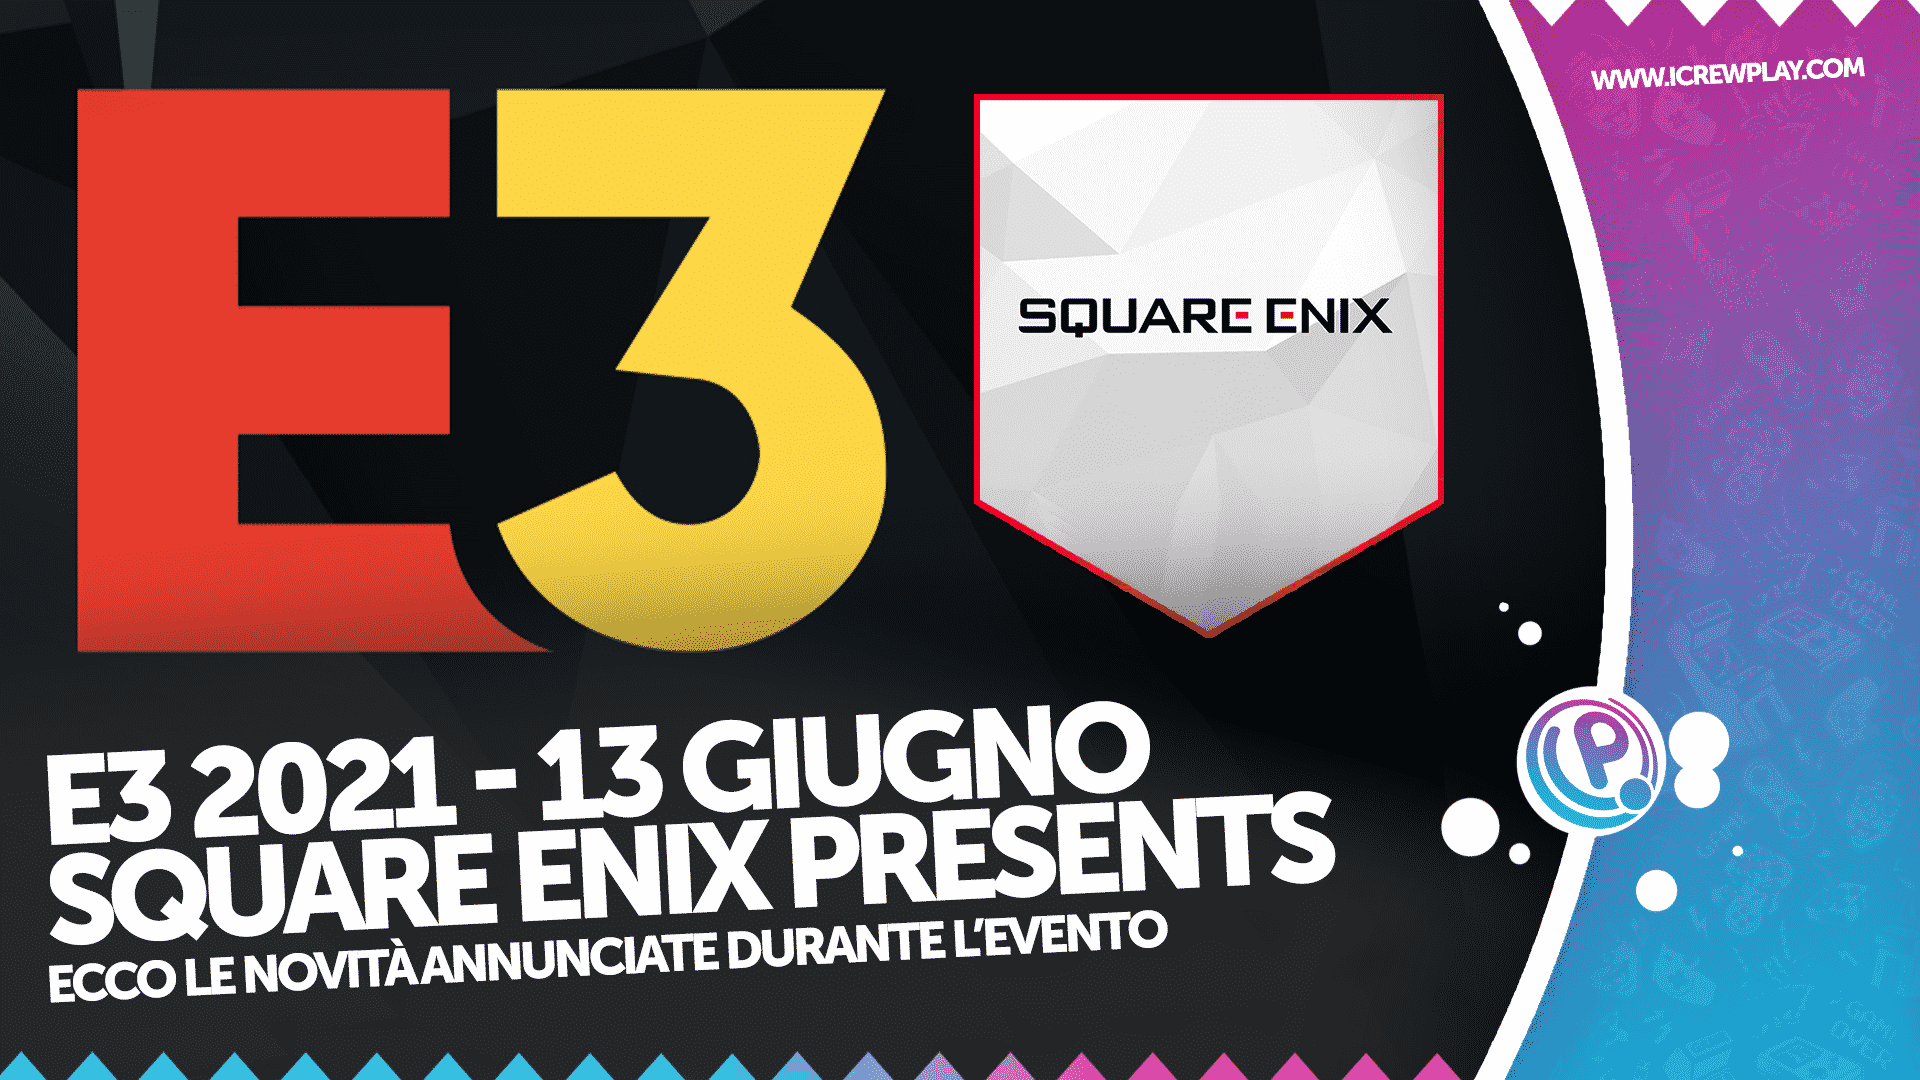 E3 2021, Square Enix, E3 2021 Square Enix, Square Enix Presents Annunci, Trailer Square Enix